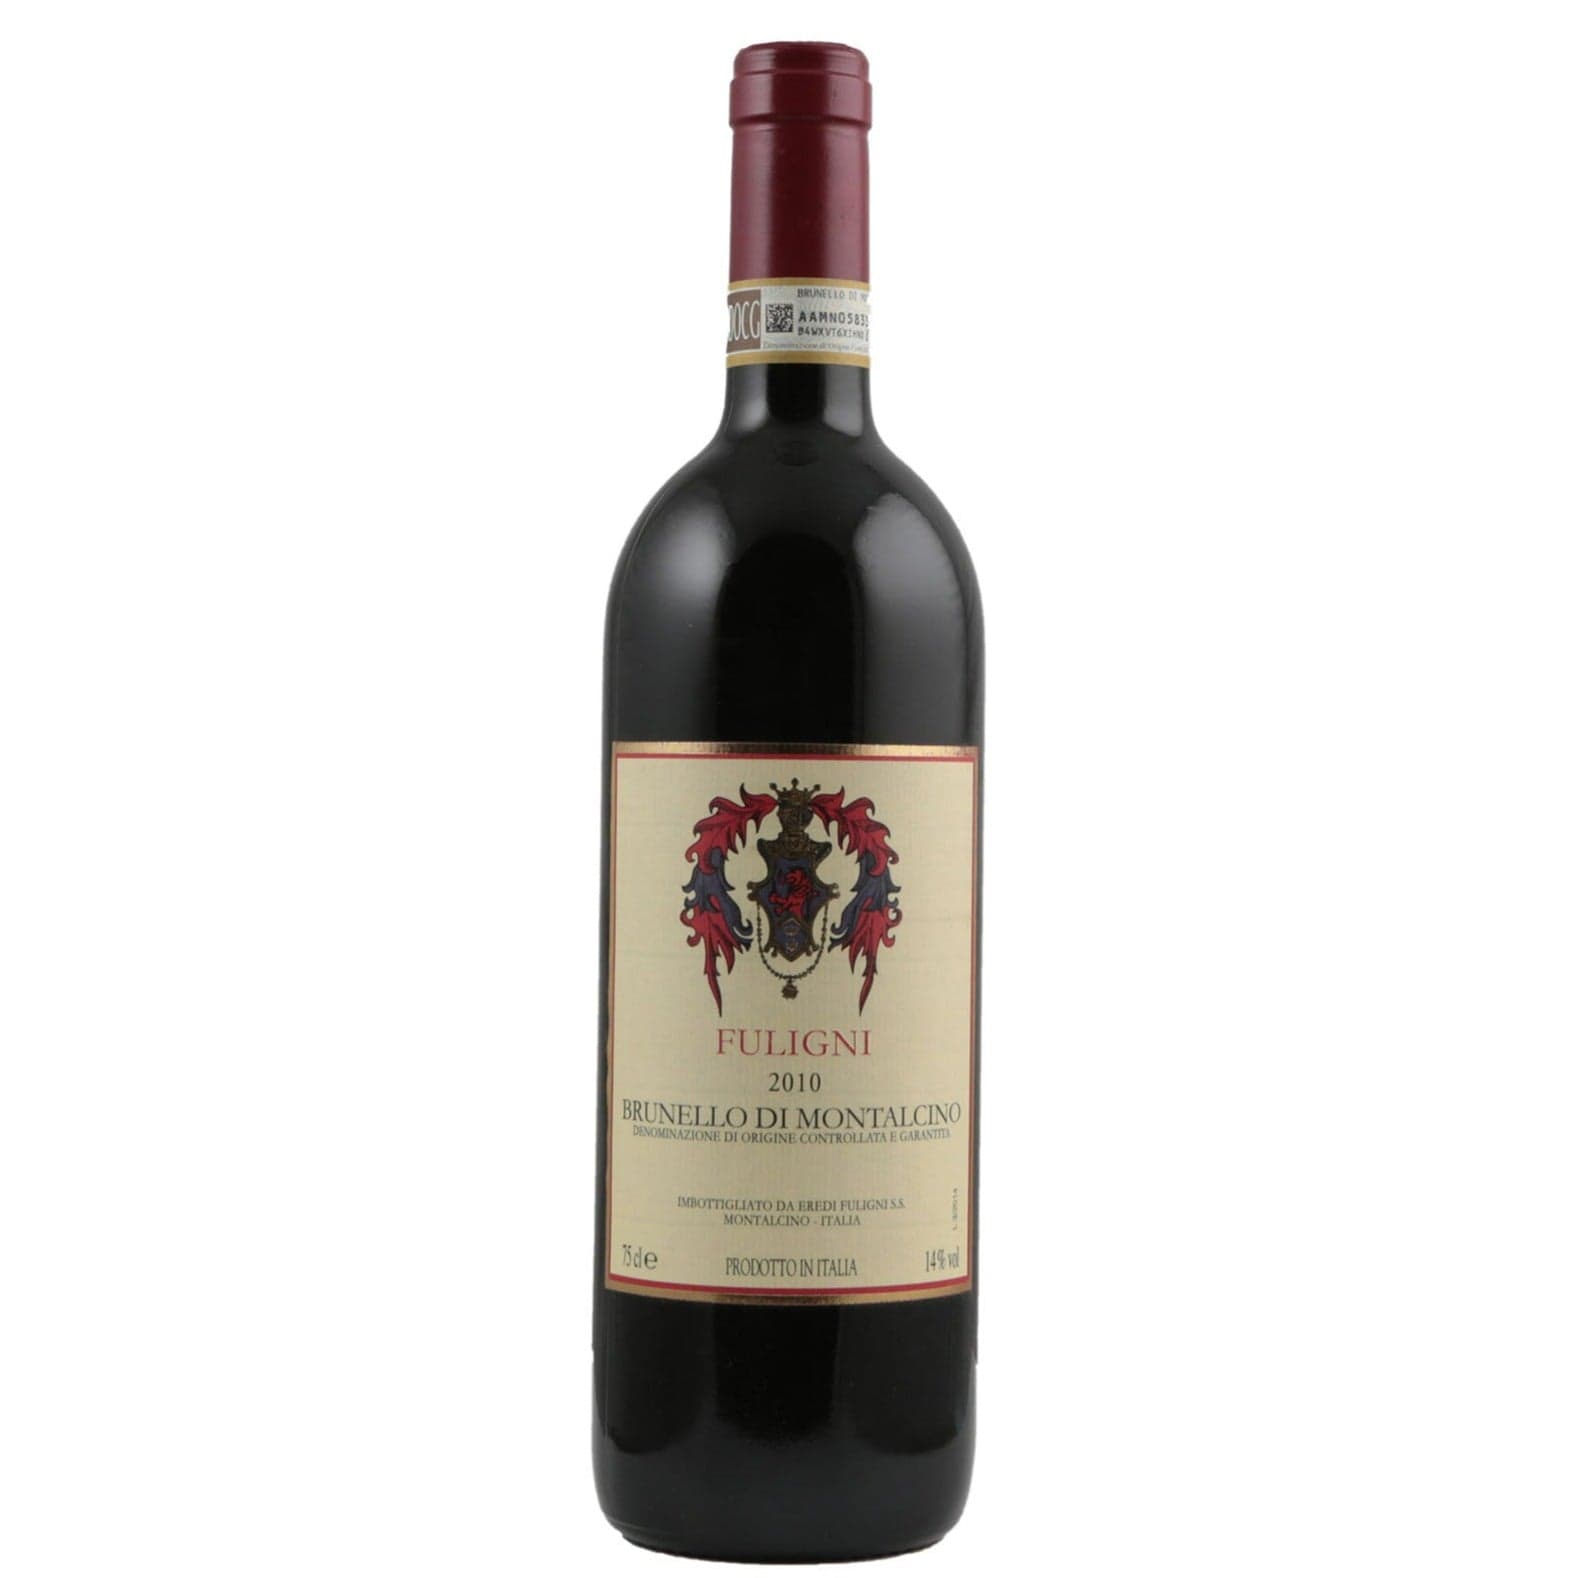 Single bottle of Red wine Fuligni, Brunello di Montalcino DOCG, Brunello di Montalcino, 2010 100% Sangiovese